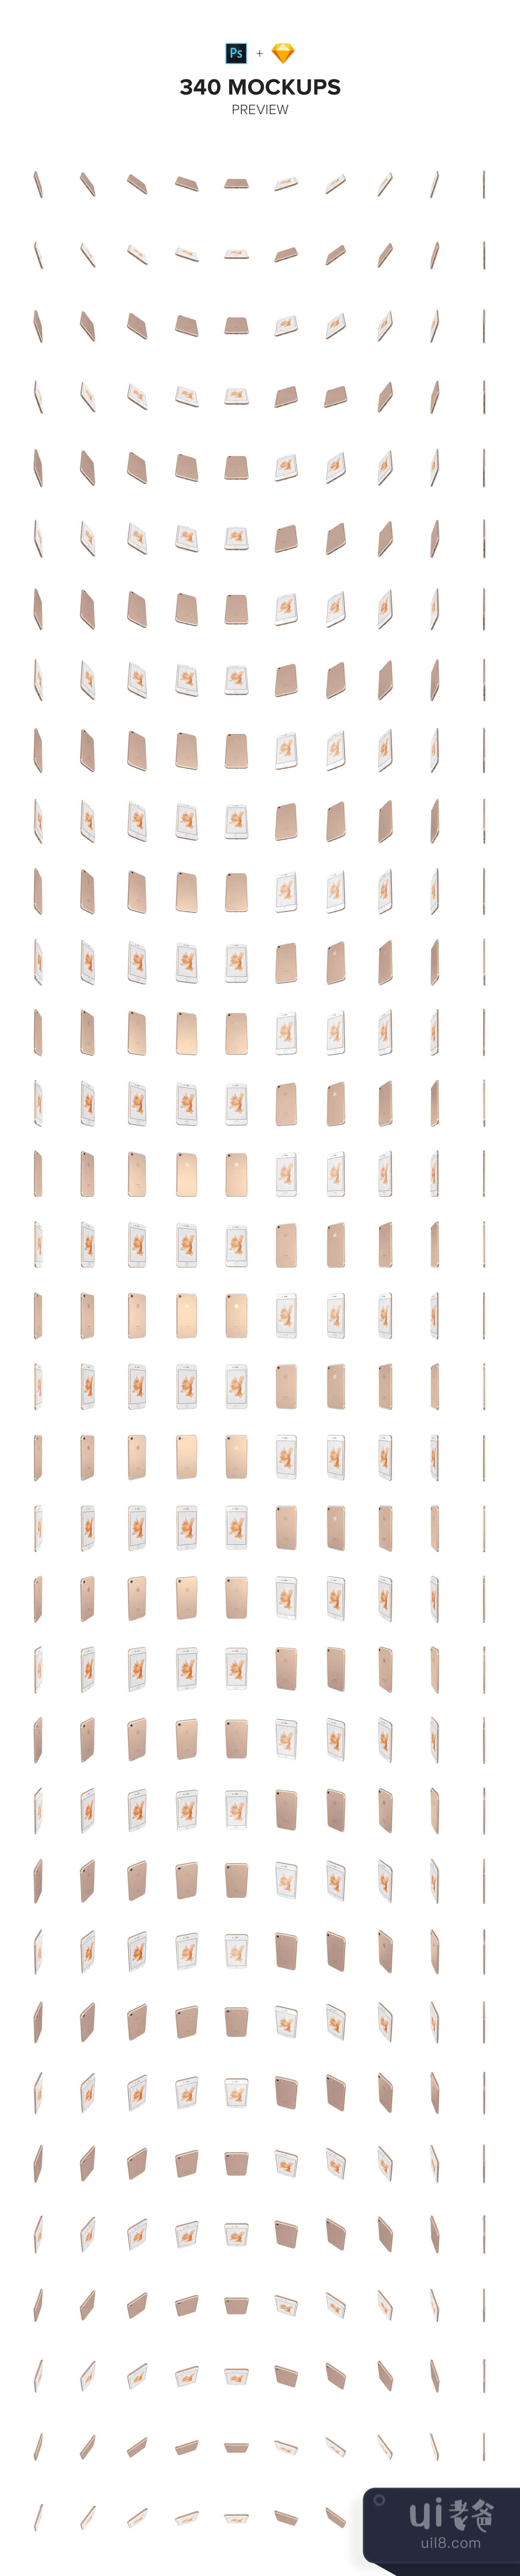 340个iPhone 7金色模拟图 (340 iPhone 7 Gold Mockups)插图